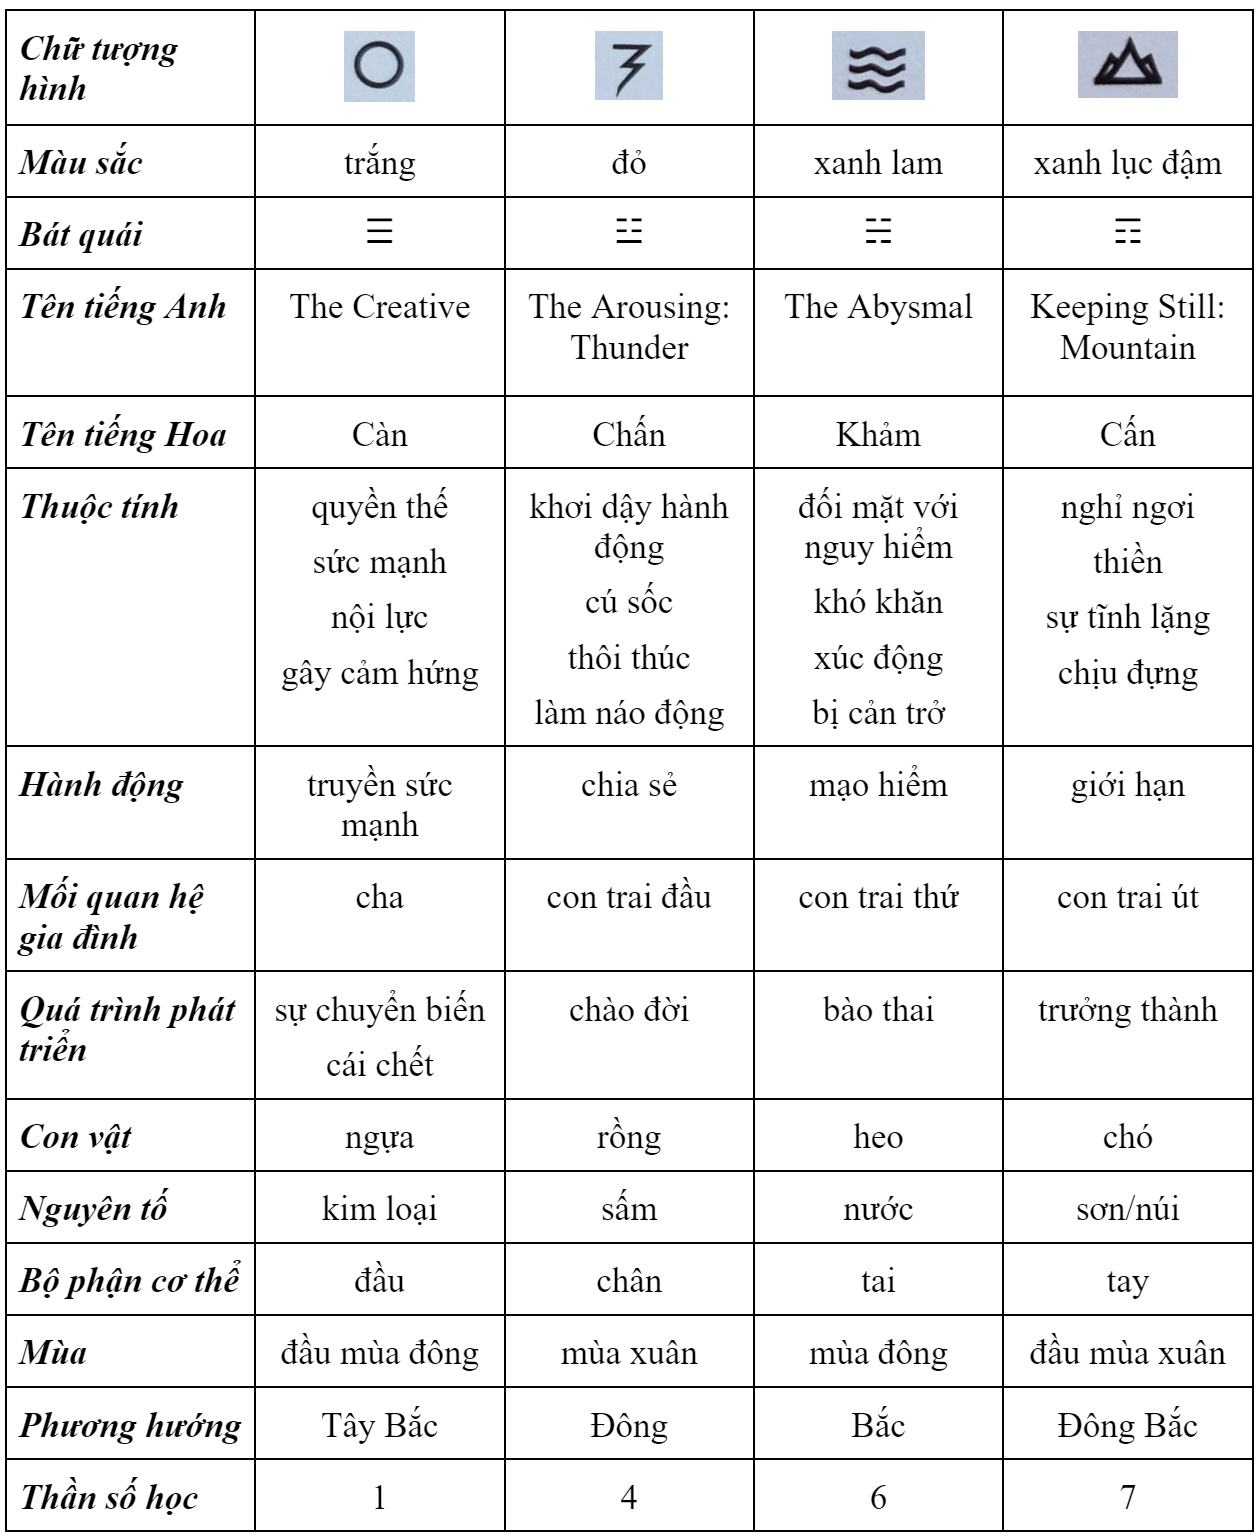 Đôi Lời Về Kinh Dịch (I Ching) 2